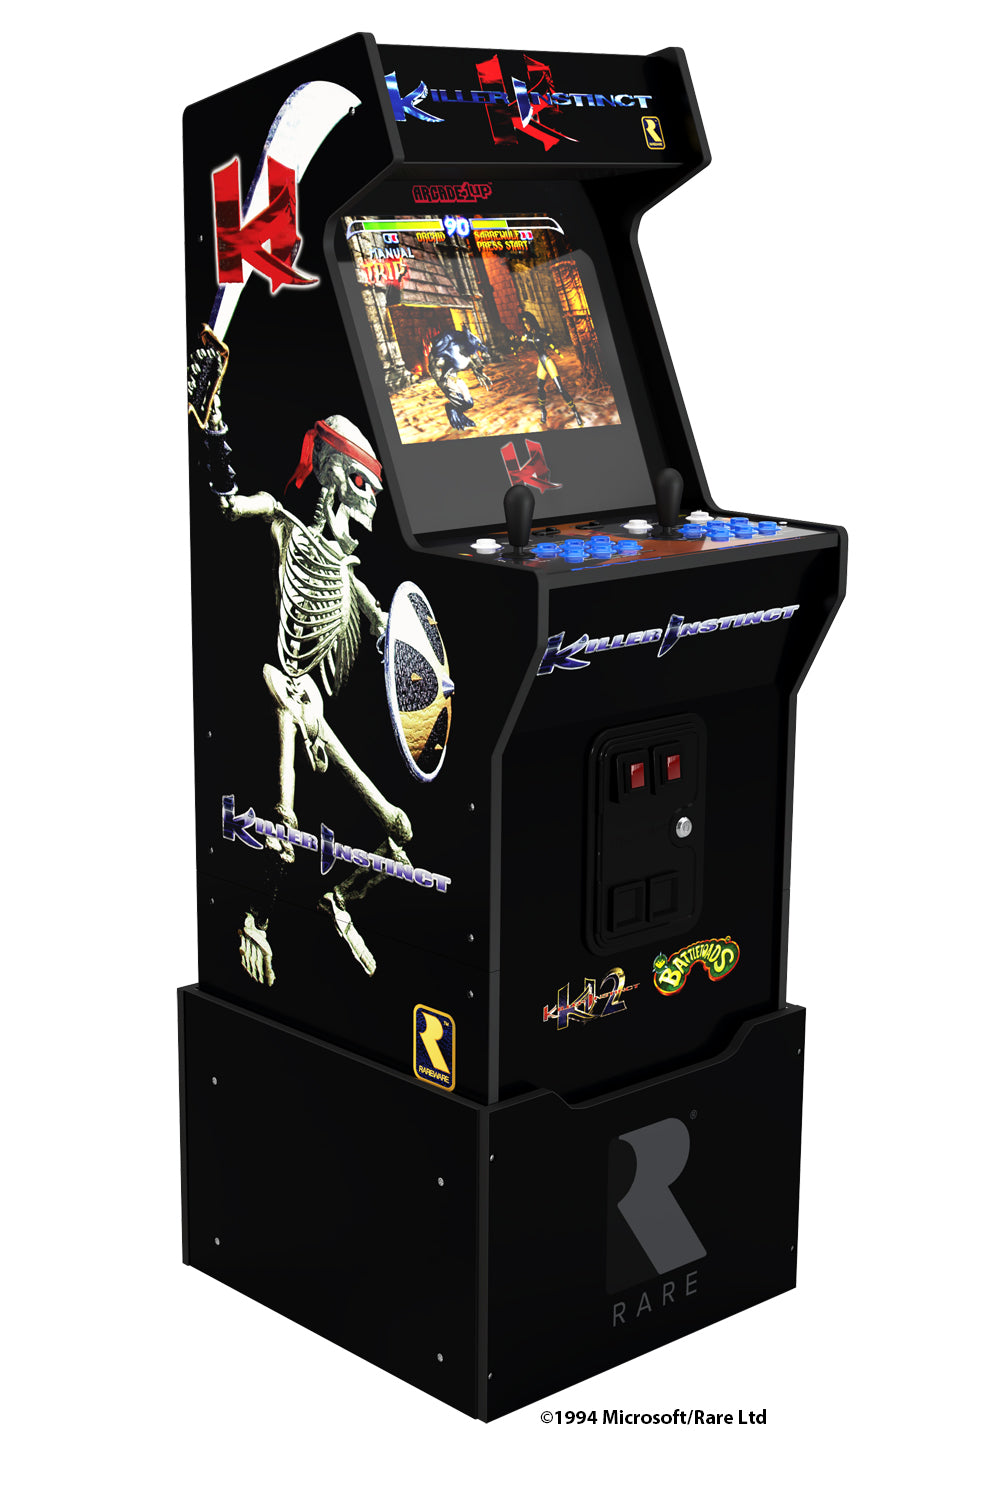 arcade1up.com